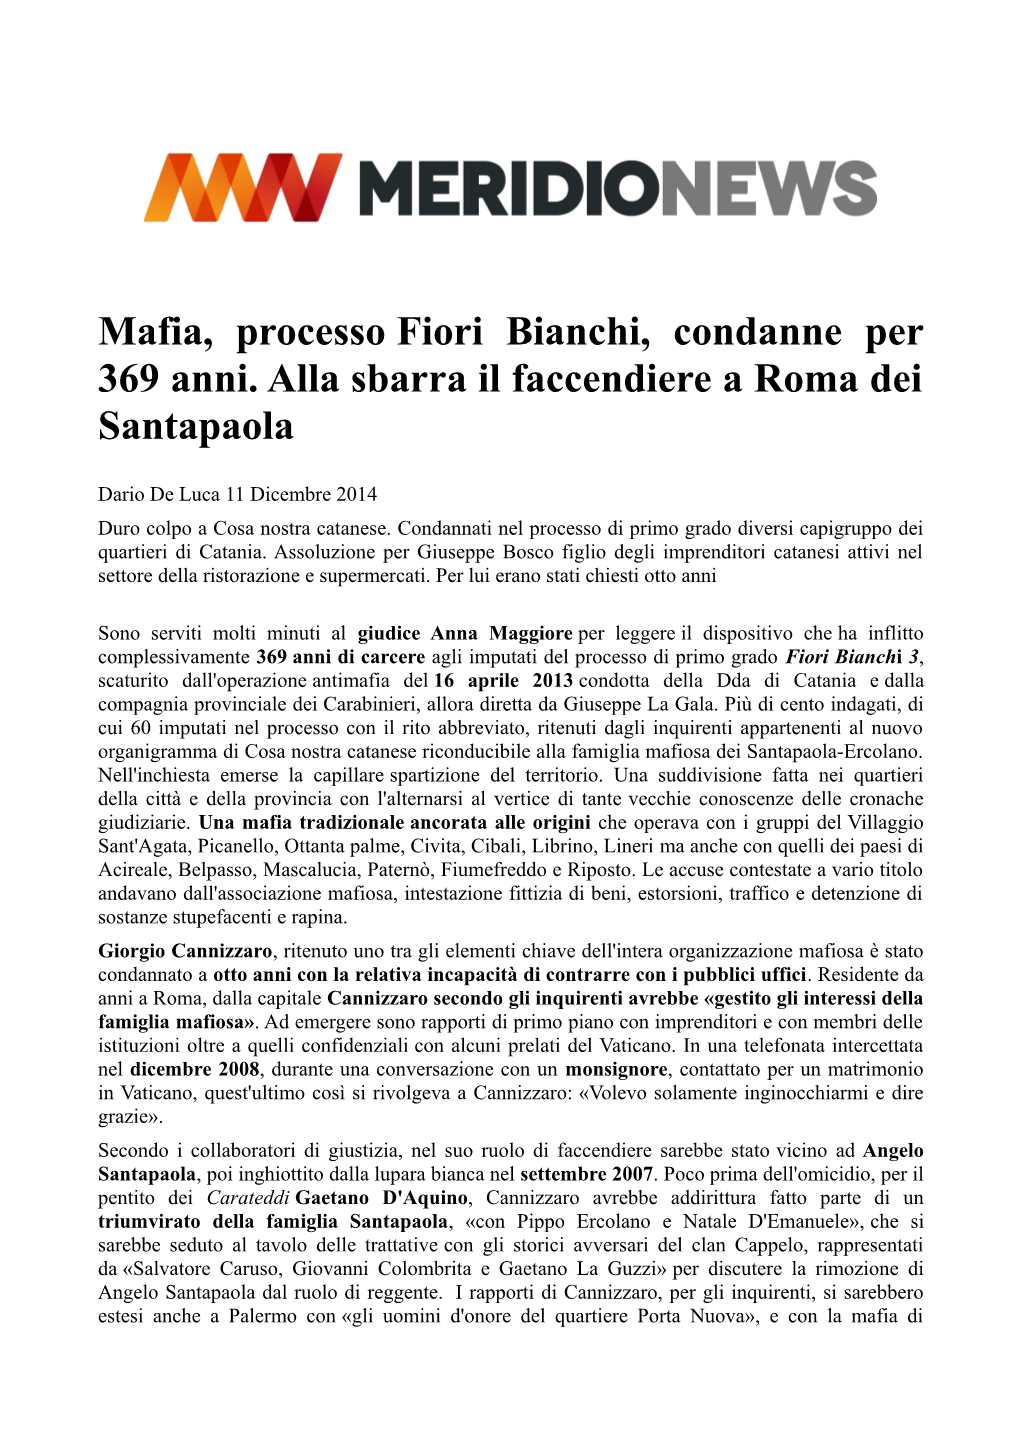 Mafia, Processo Fiori Bianchi, Condanne Per 369 Anni. Alla Sbarra Il Faccendiere a Roma Dei Santapaola